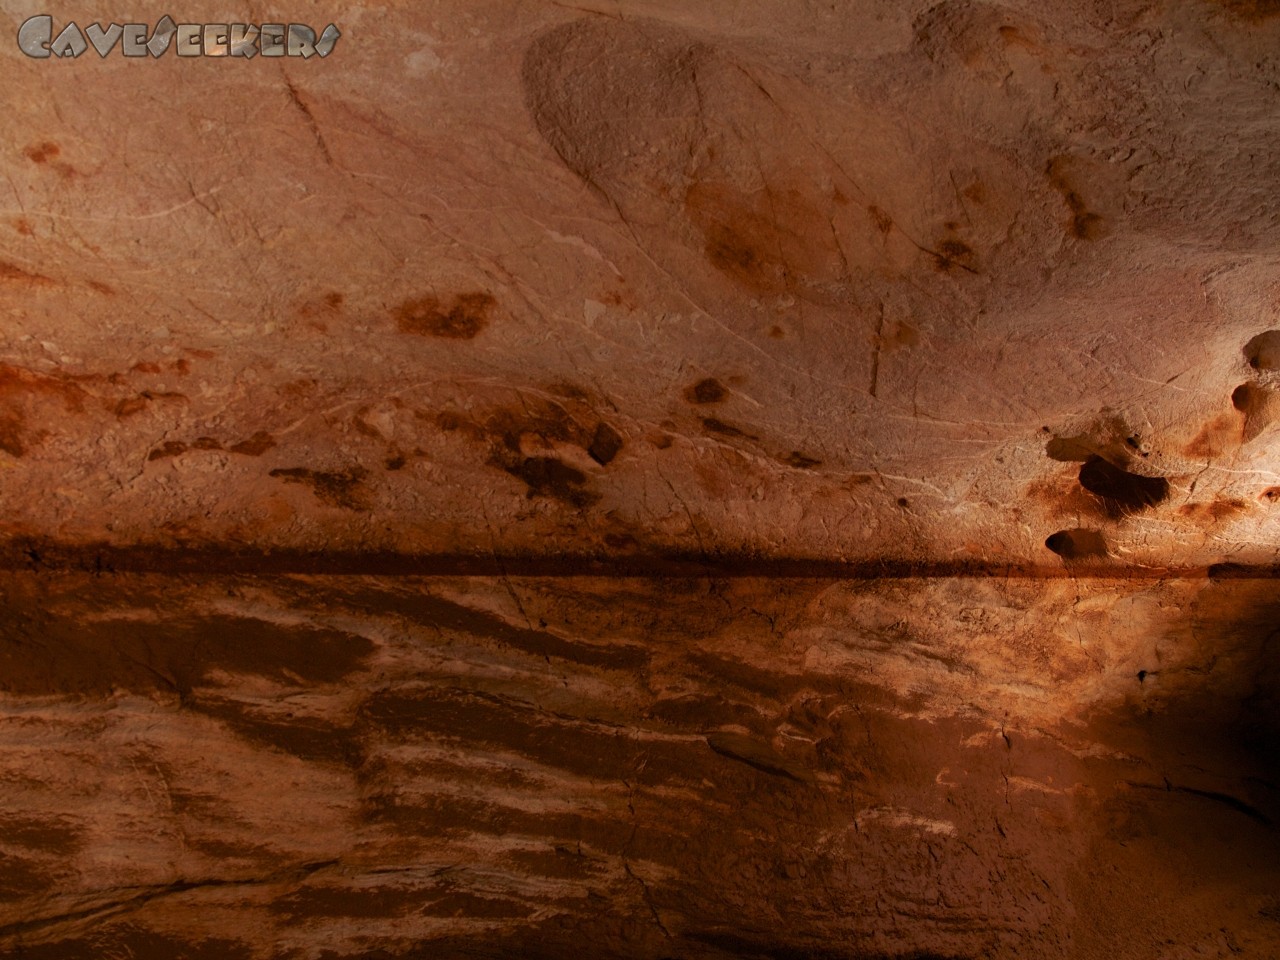 Grotta del Fico: Eine wunderbare Wassermarke. Schön in rot. Da man sich grob 50 Meter über dem Meeresspiegel befindet, muss wohl hier der Höhlenforscher erst noch einige Markierungsversuche gestalten, um herauszufinden, wie das wohl passiert ist.